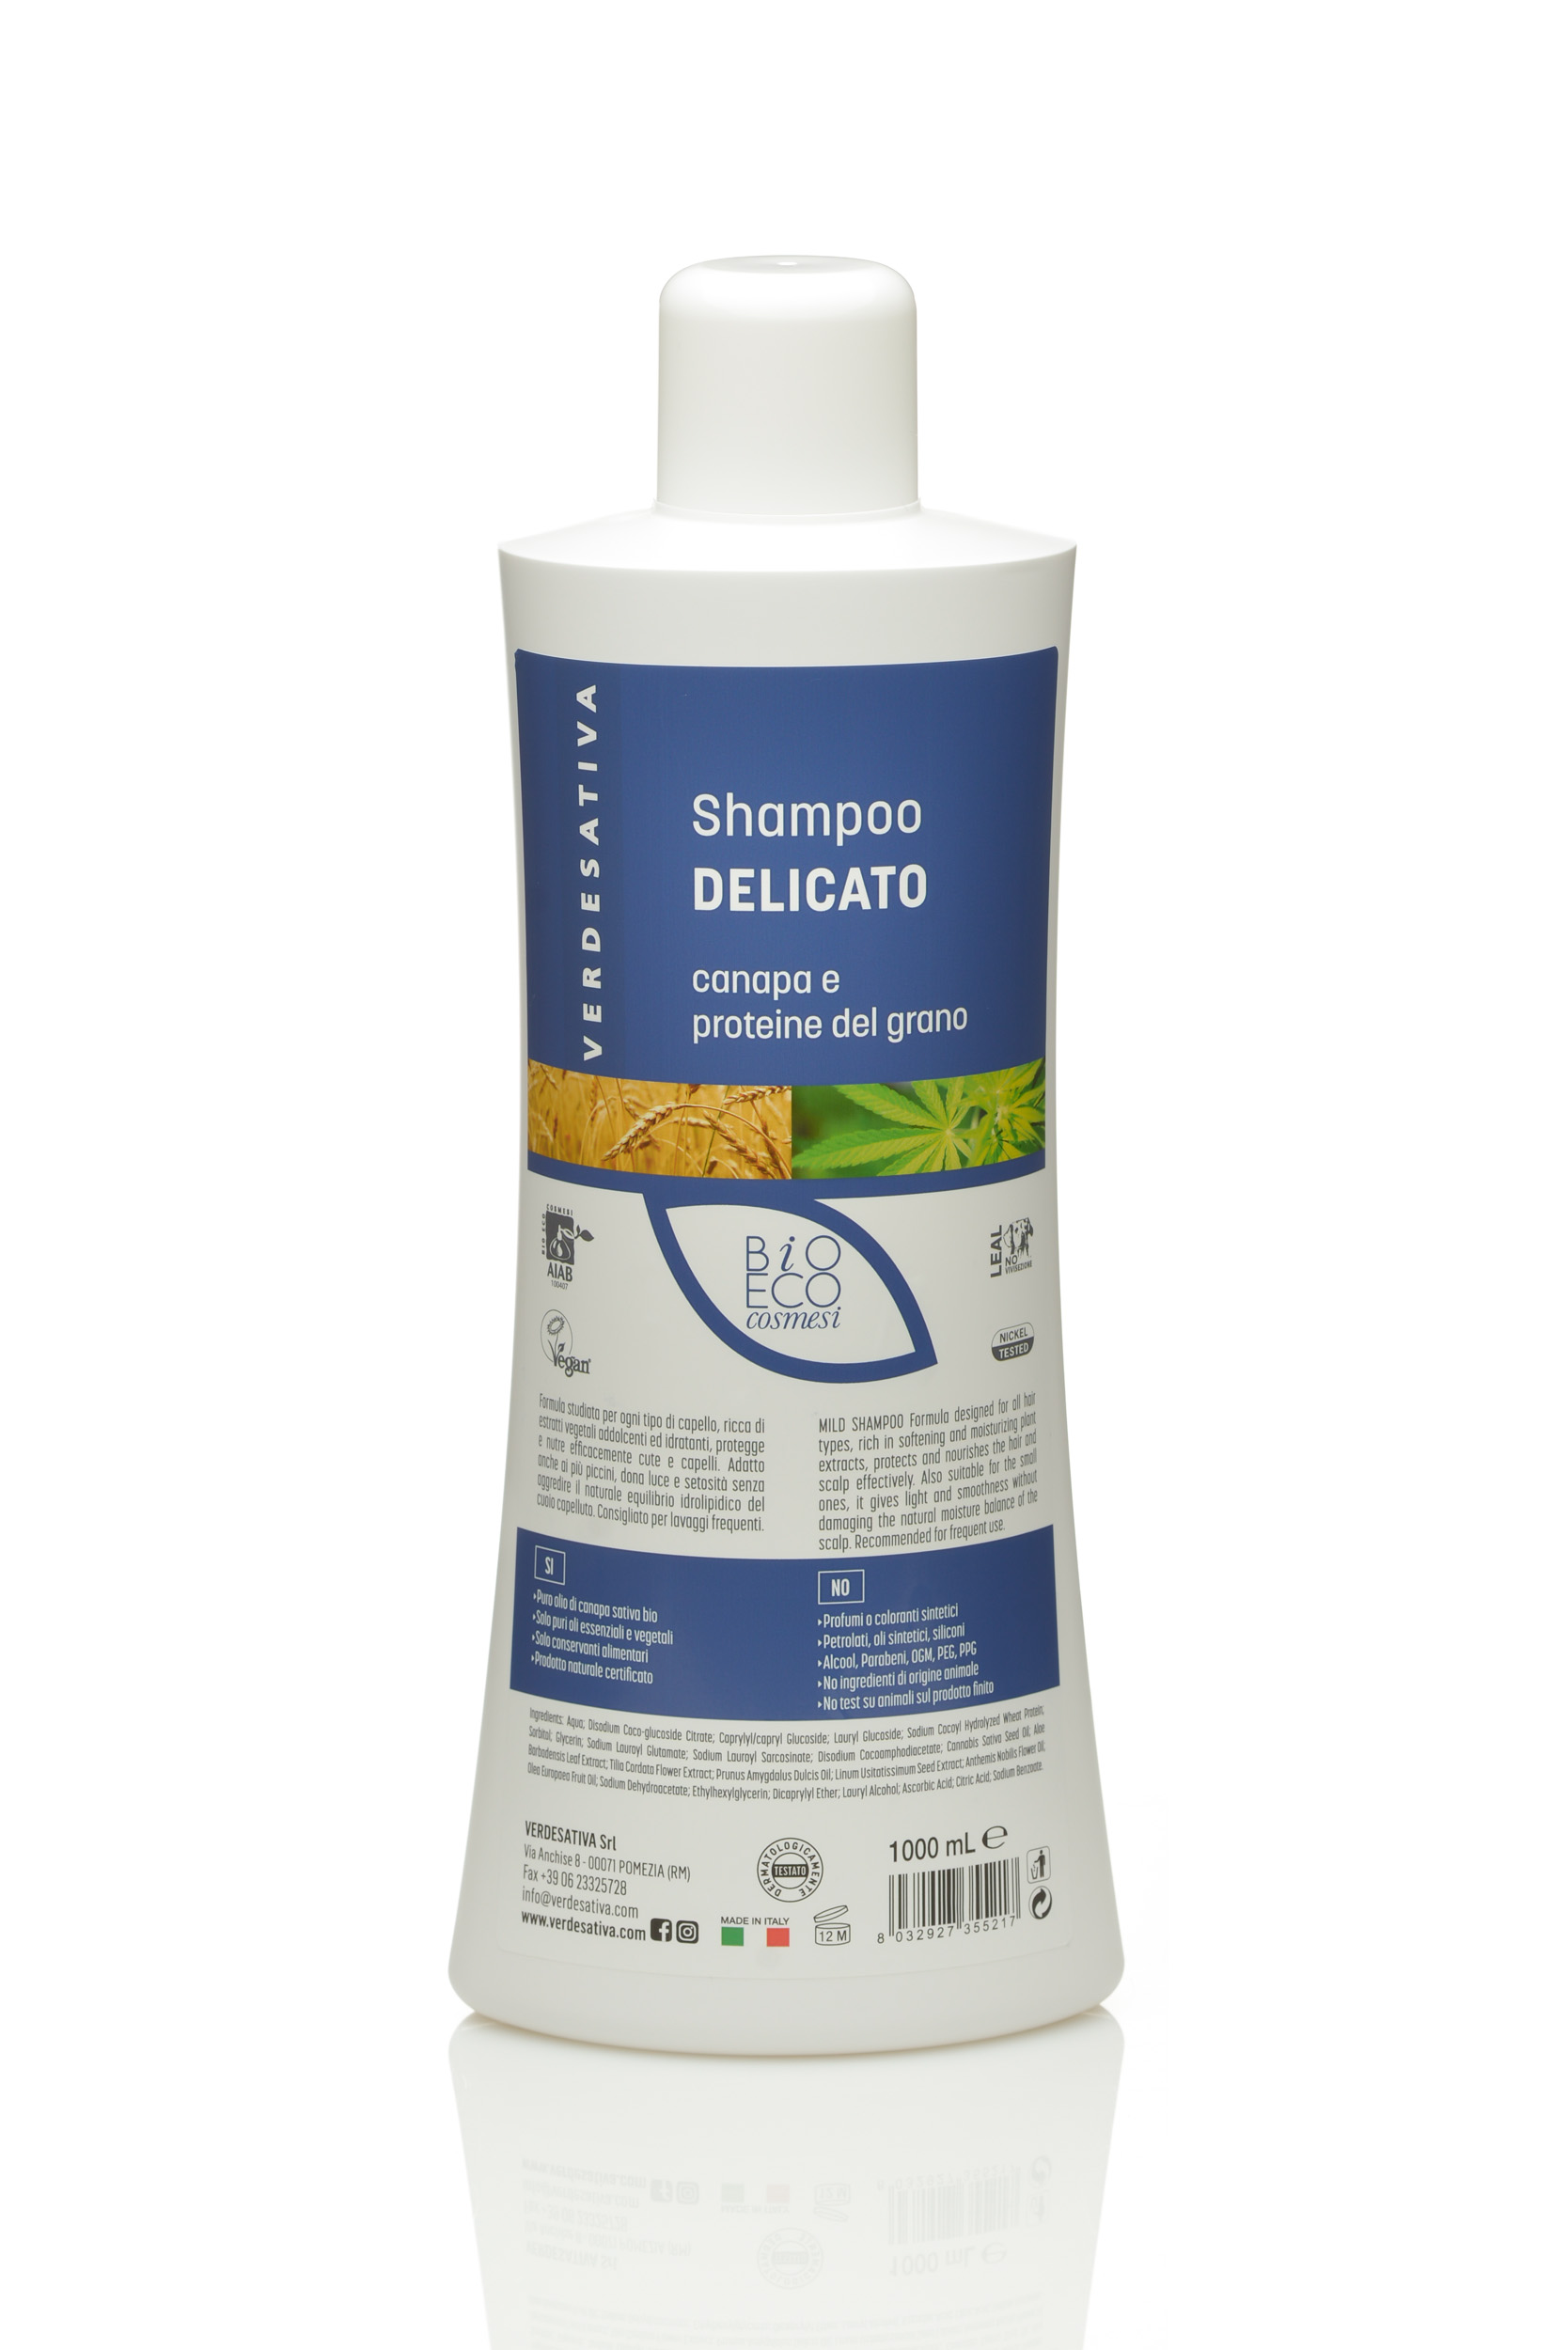 Shampoo Delicato canapa e proteine del grano 100% naturale e bio degradabile – 1lt